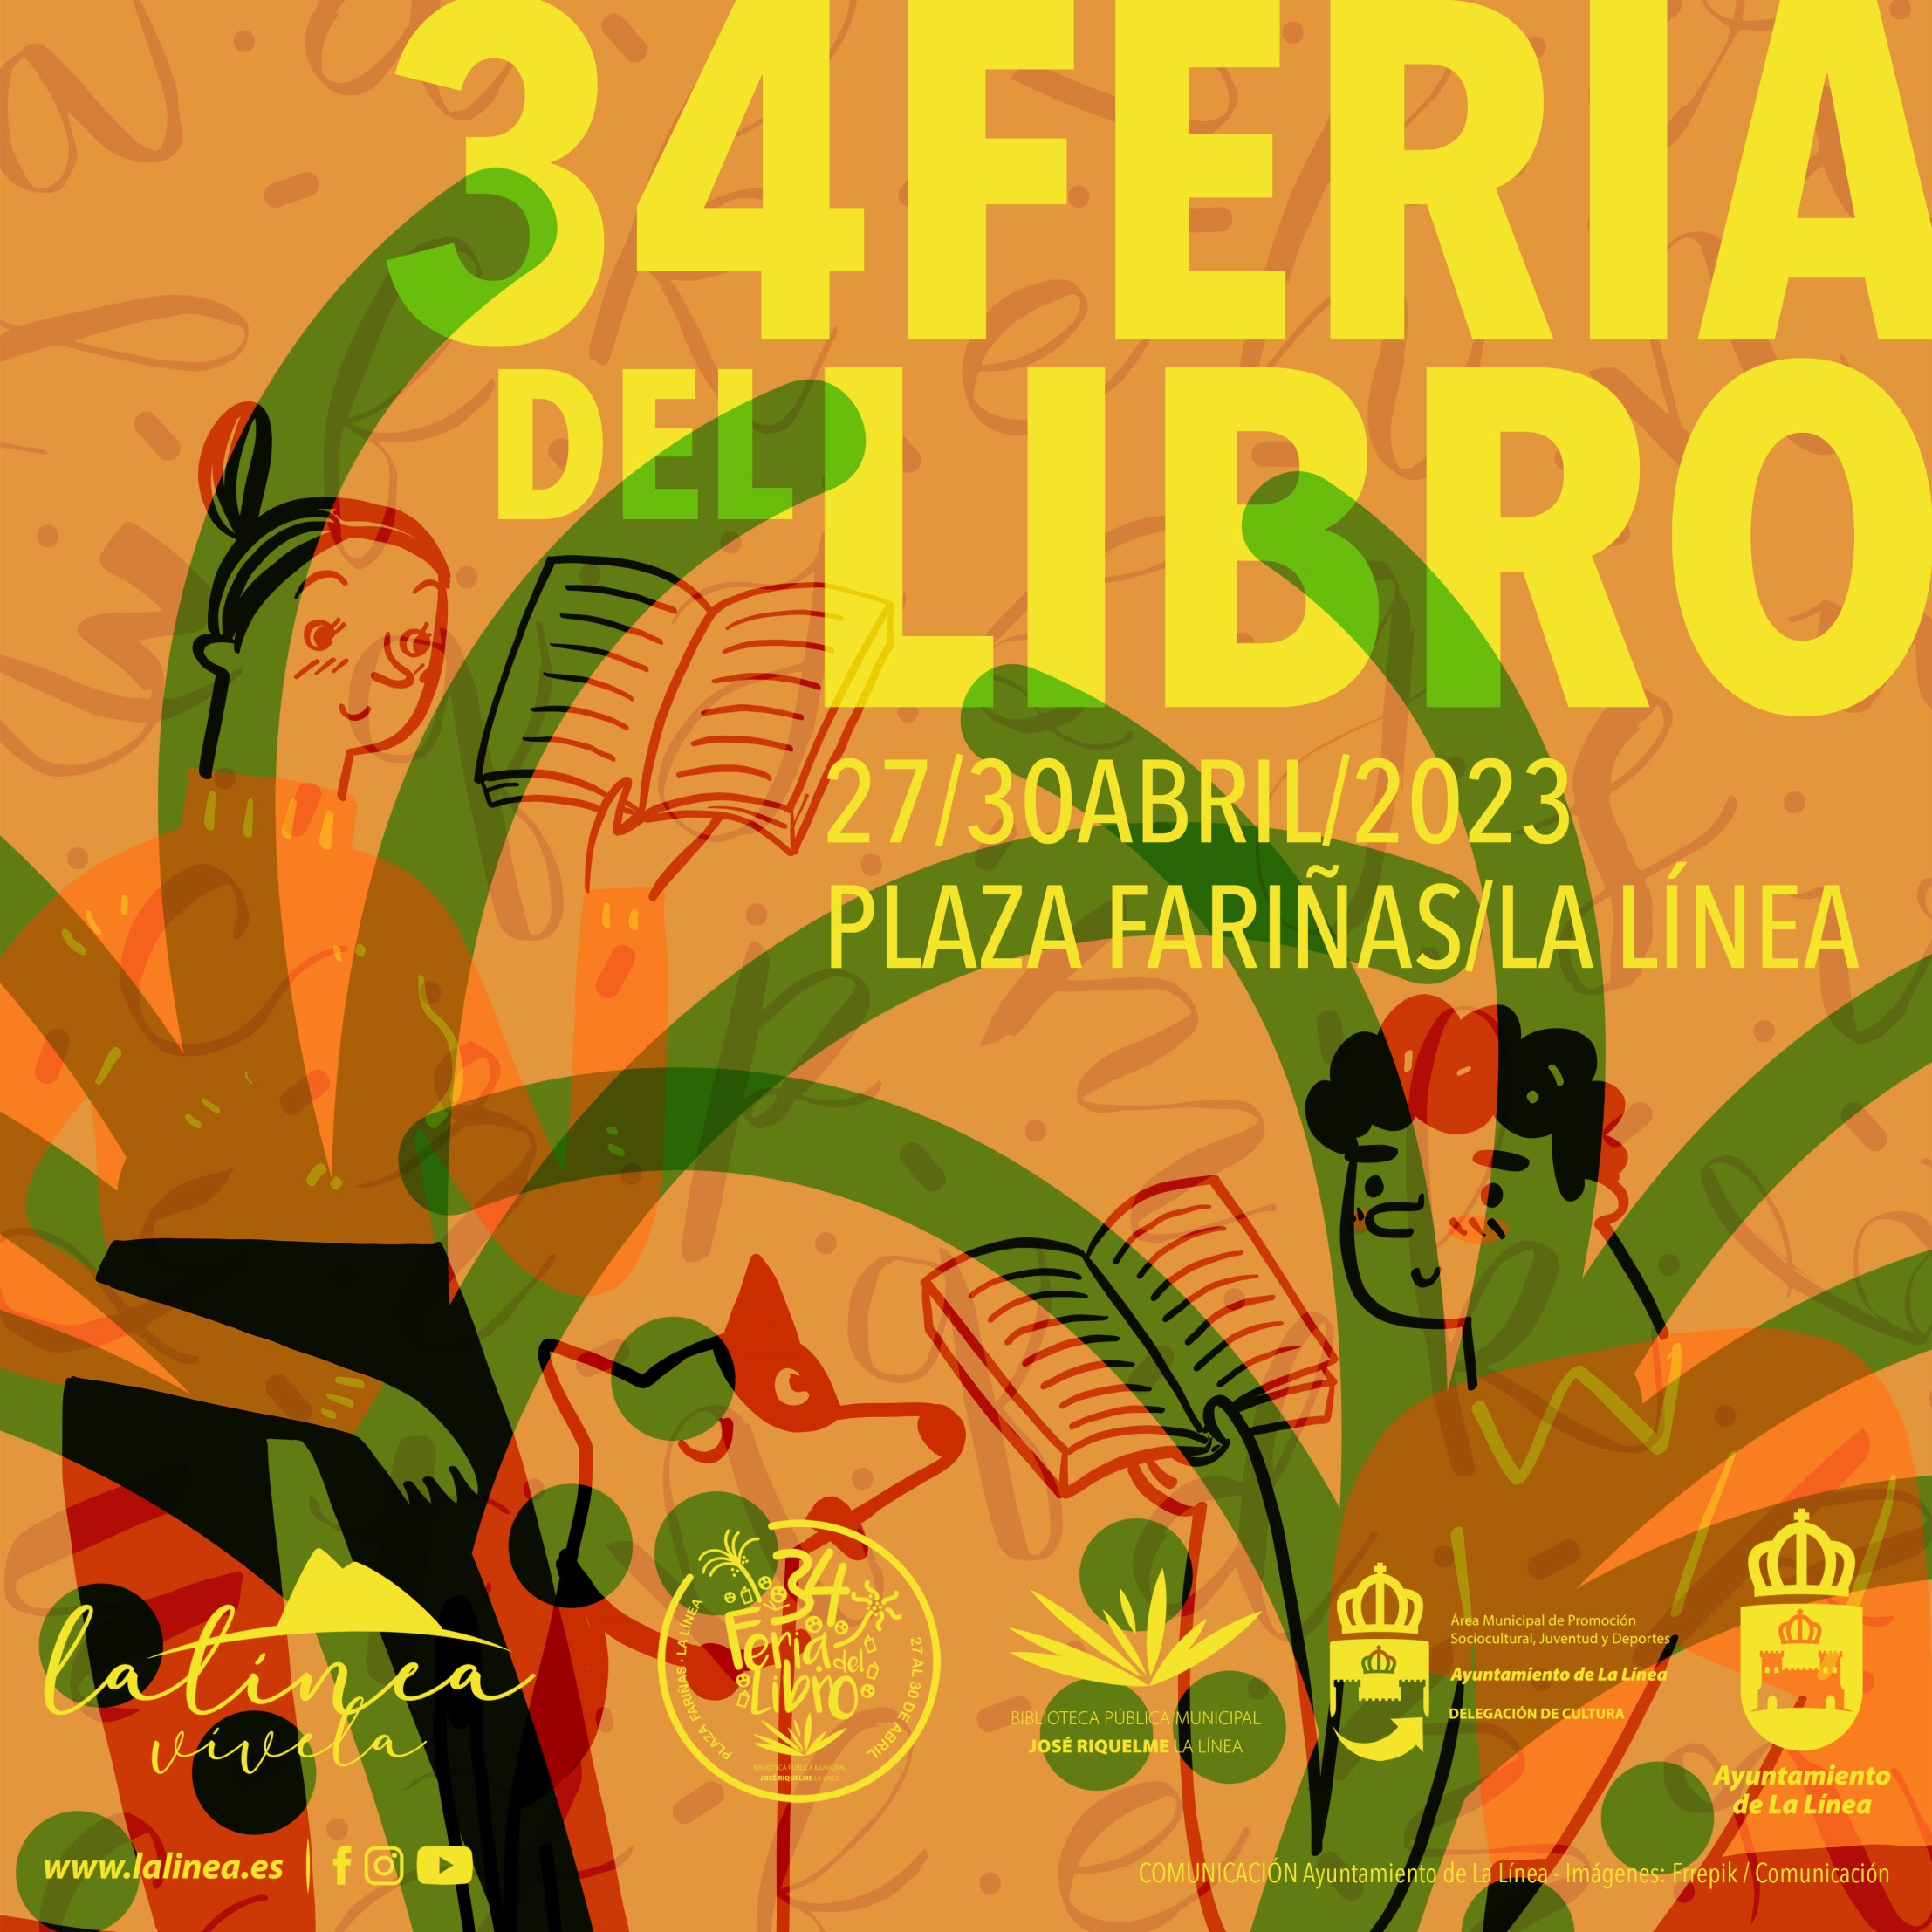 RRSS 34 Feria del Libro